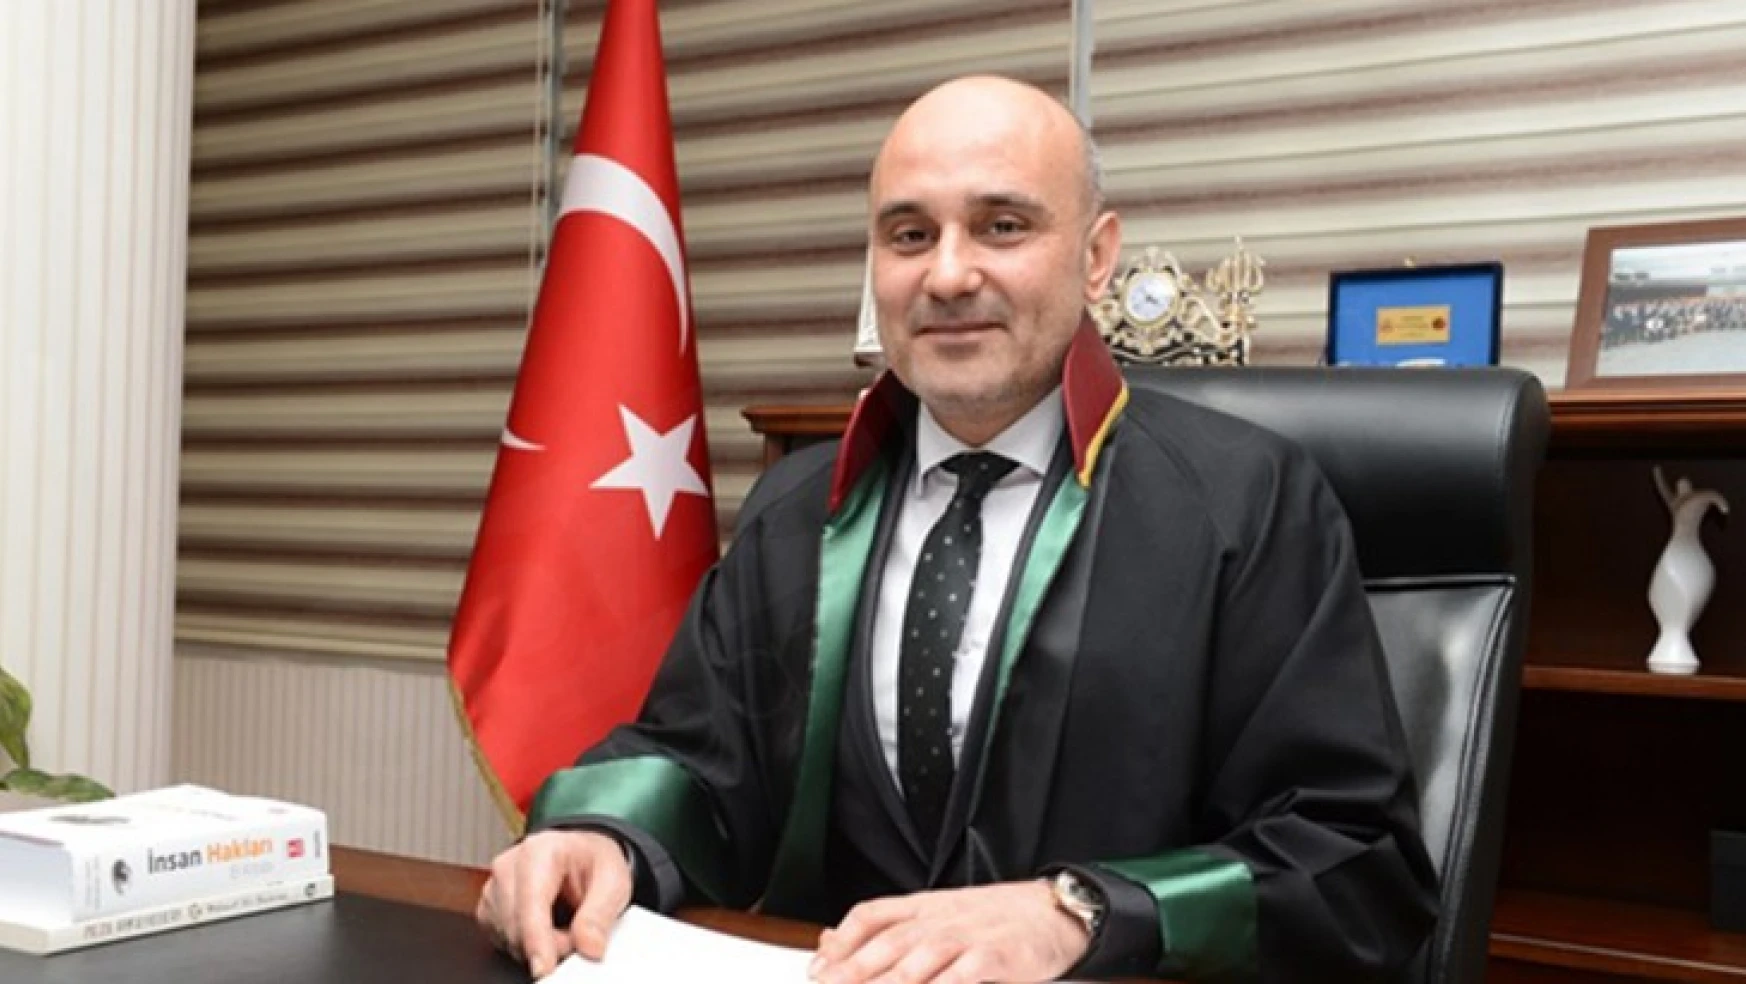 Kahramanmaraş Barosu Başkanı Av. Gül'den adli tatil mesajı